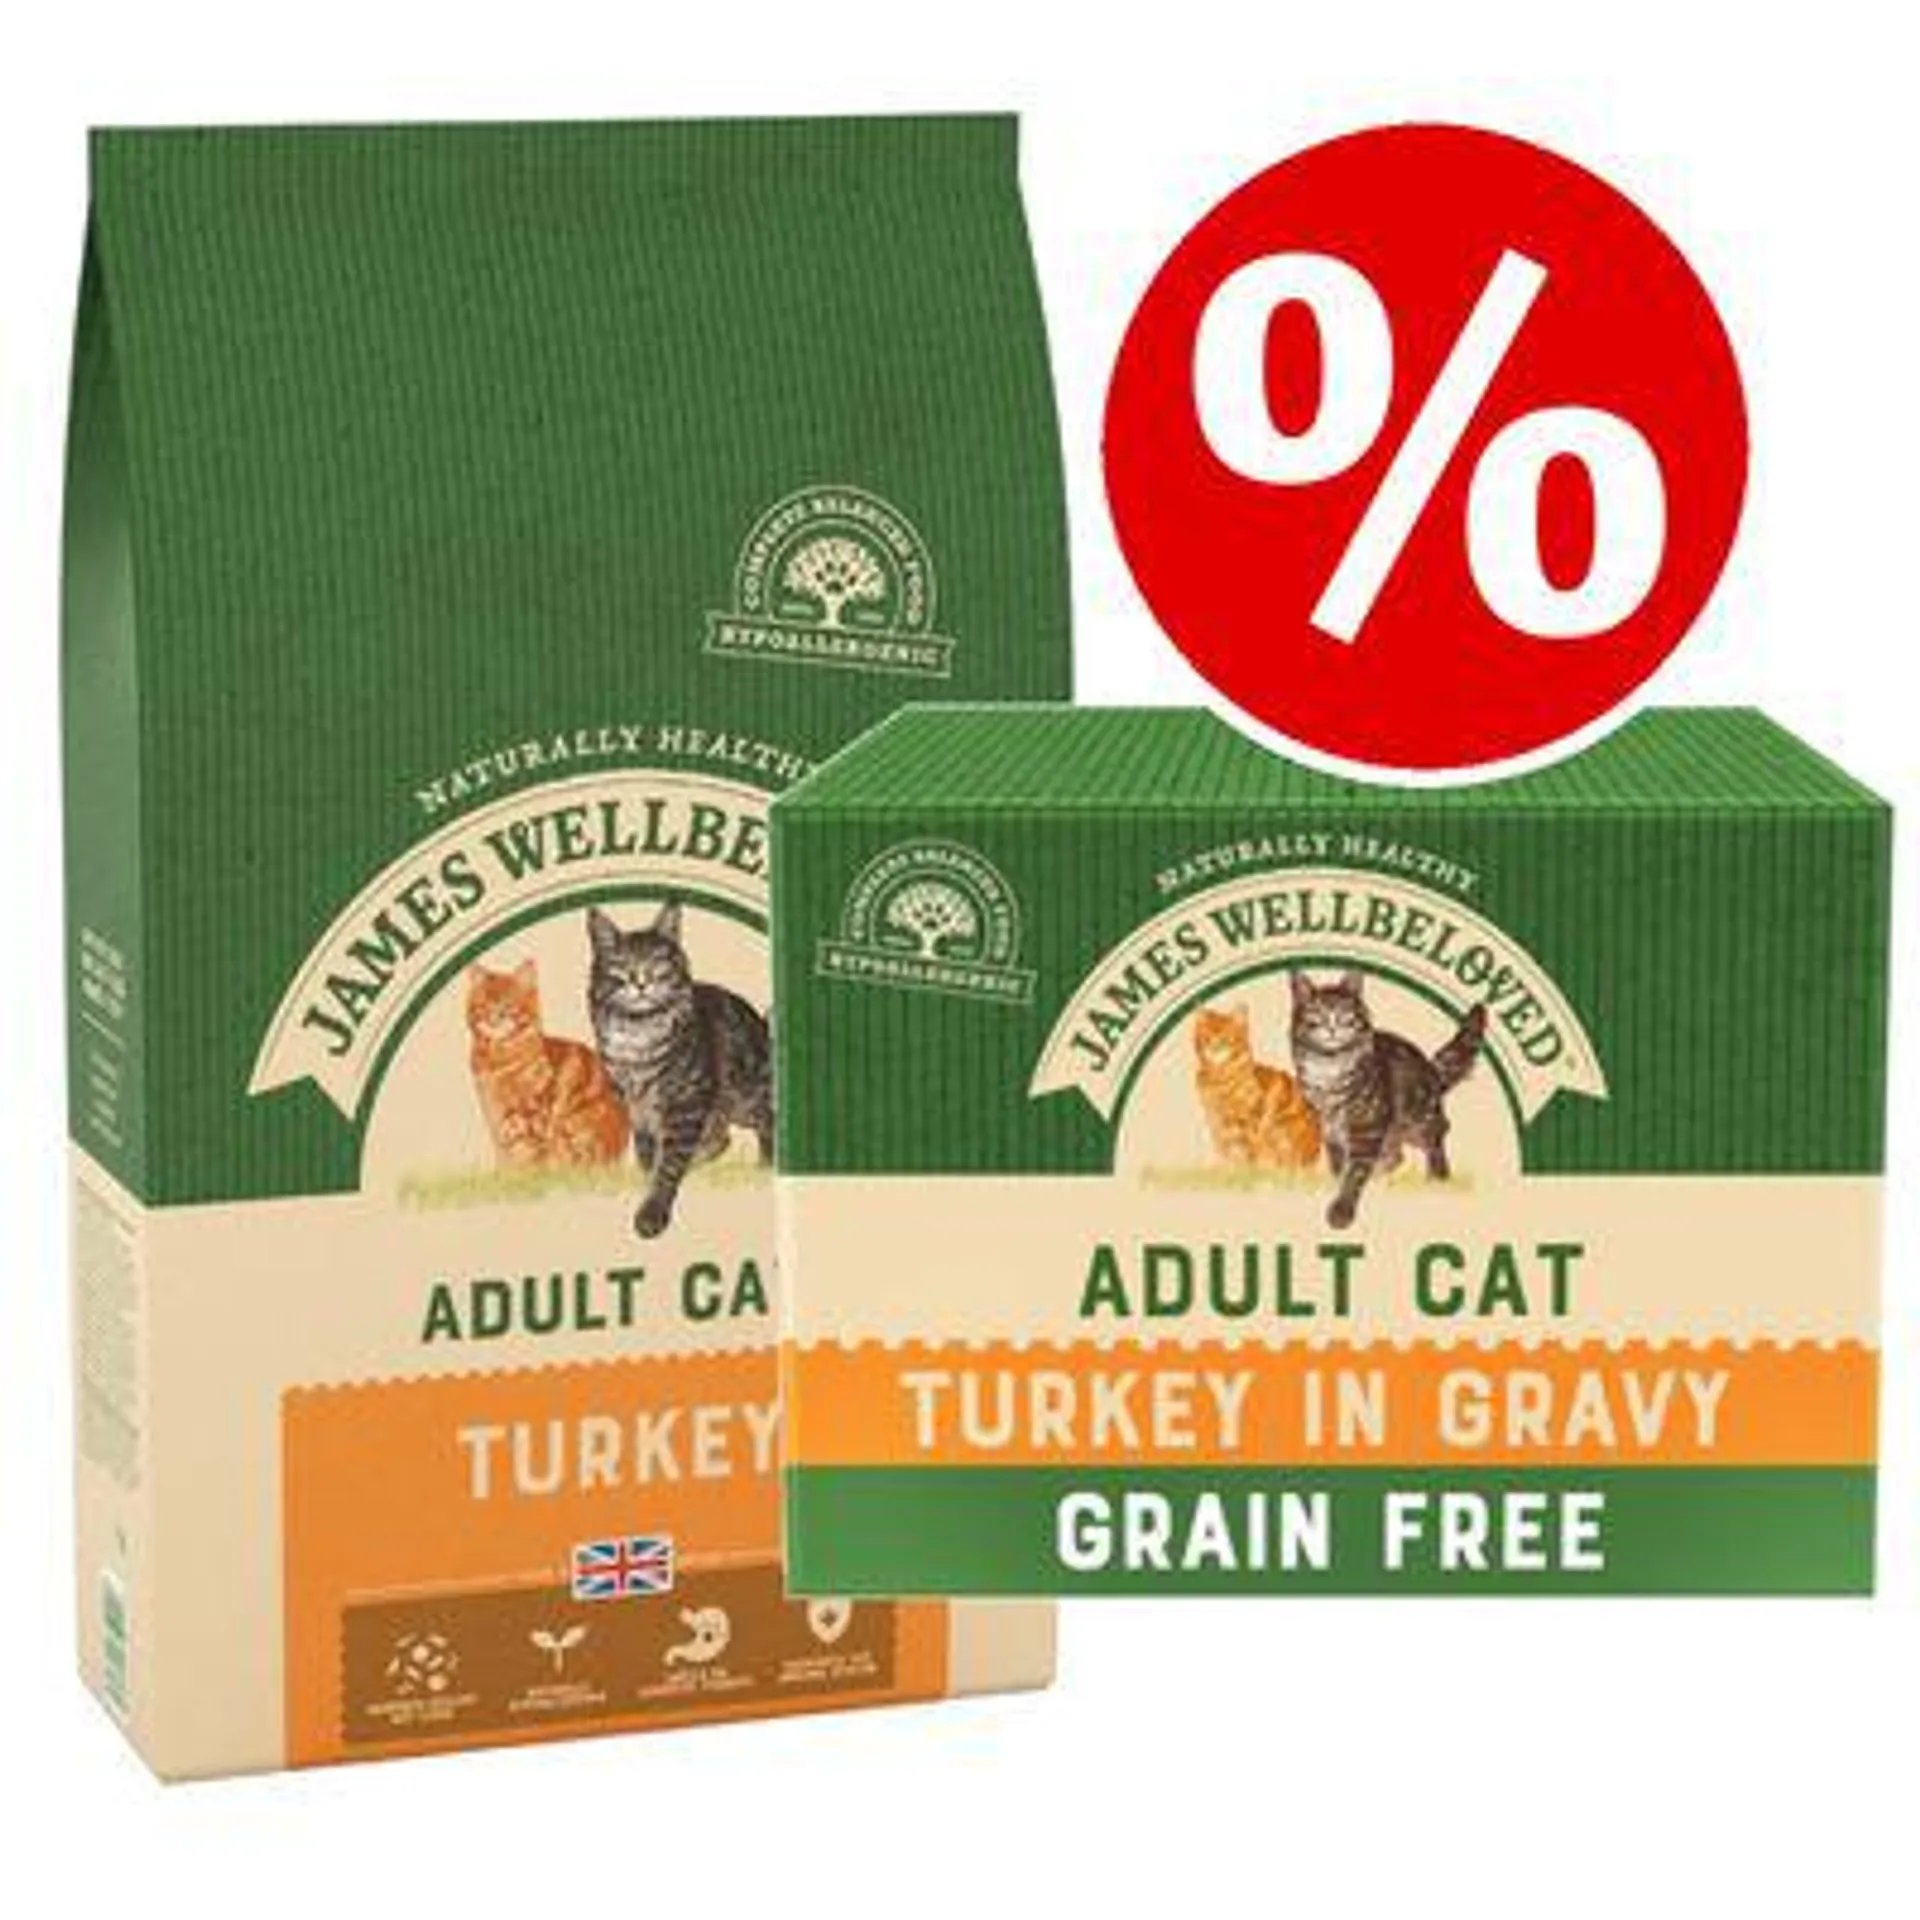 10kg James Wellbeloved Dry Cat Food + Turkey Wet Food - 15% Off!*